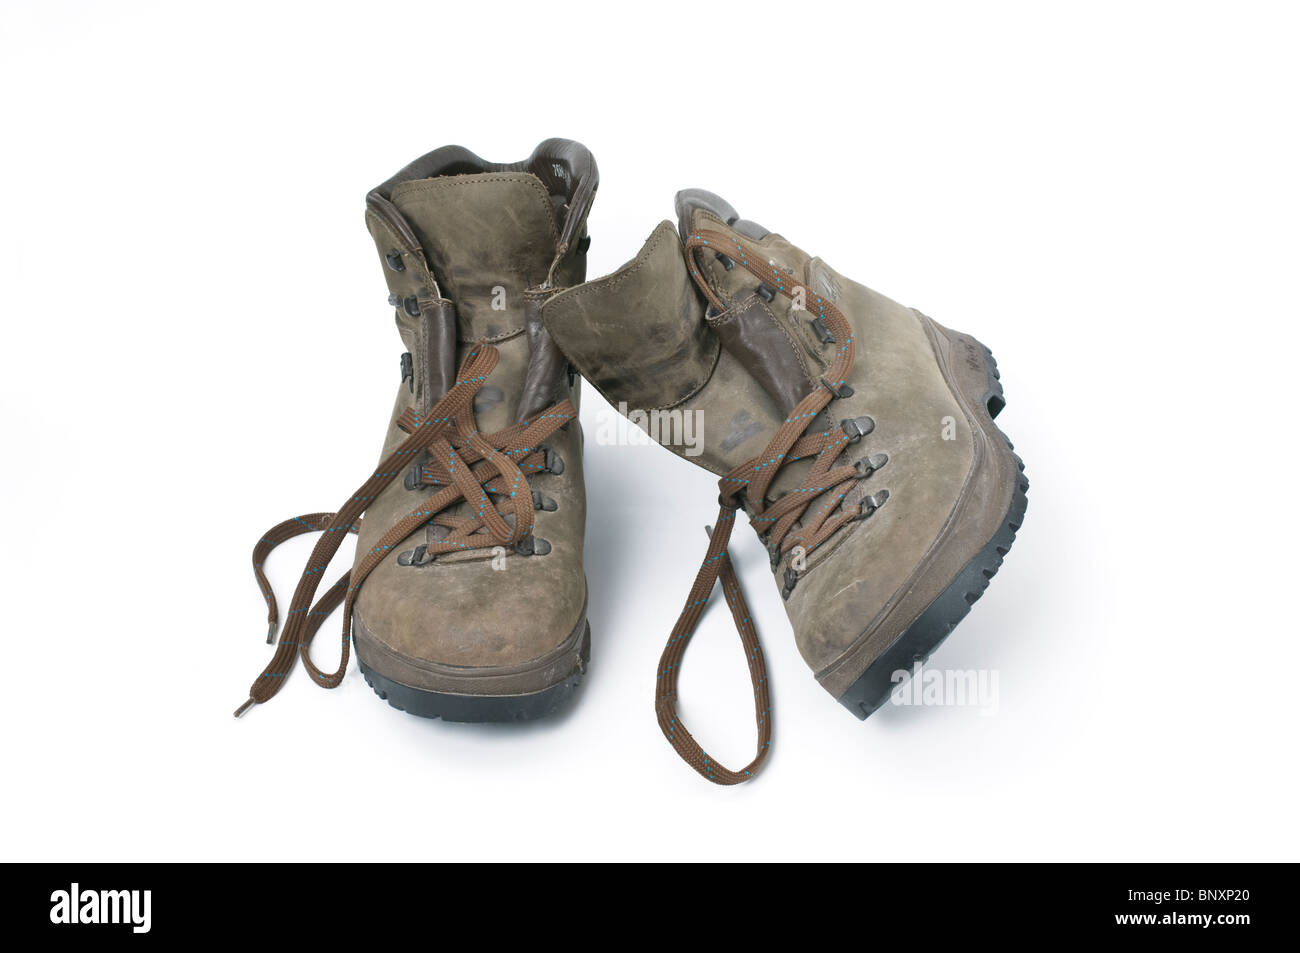 Une vieille paire de bottes de randonnée usé utilisé sur un fond blanc Banque D'Images